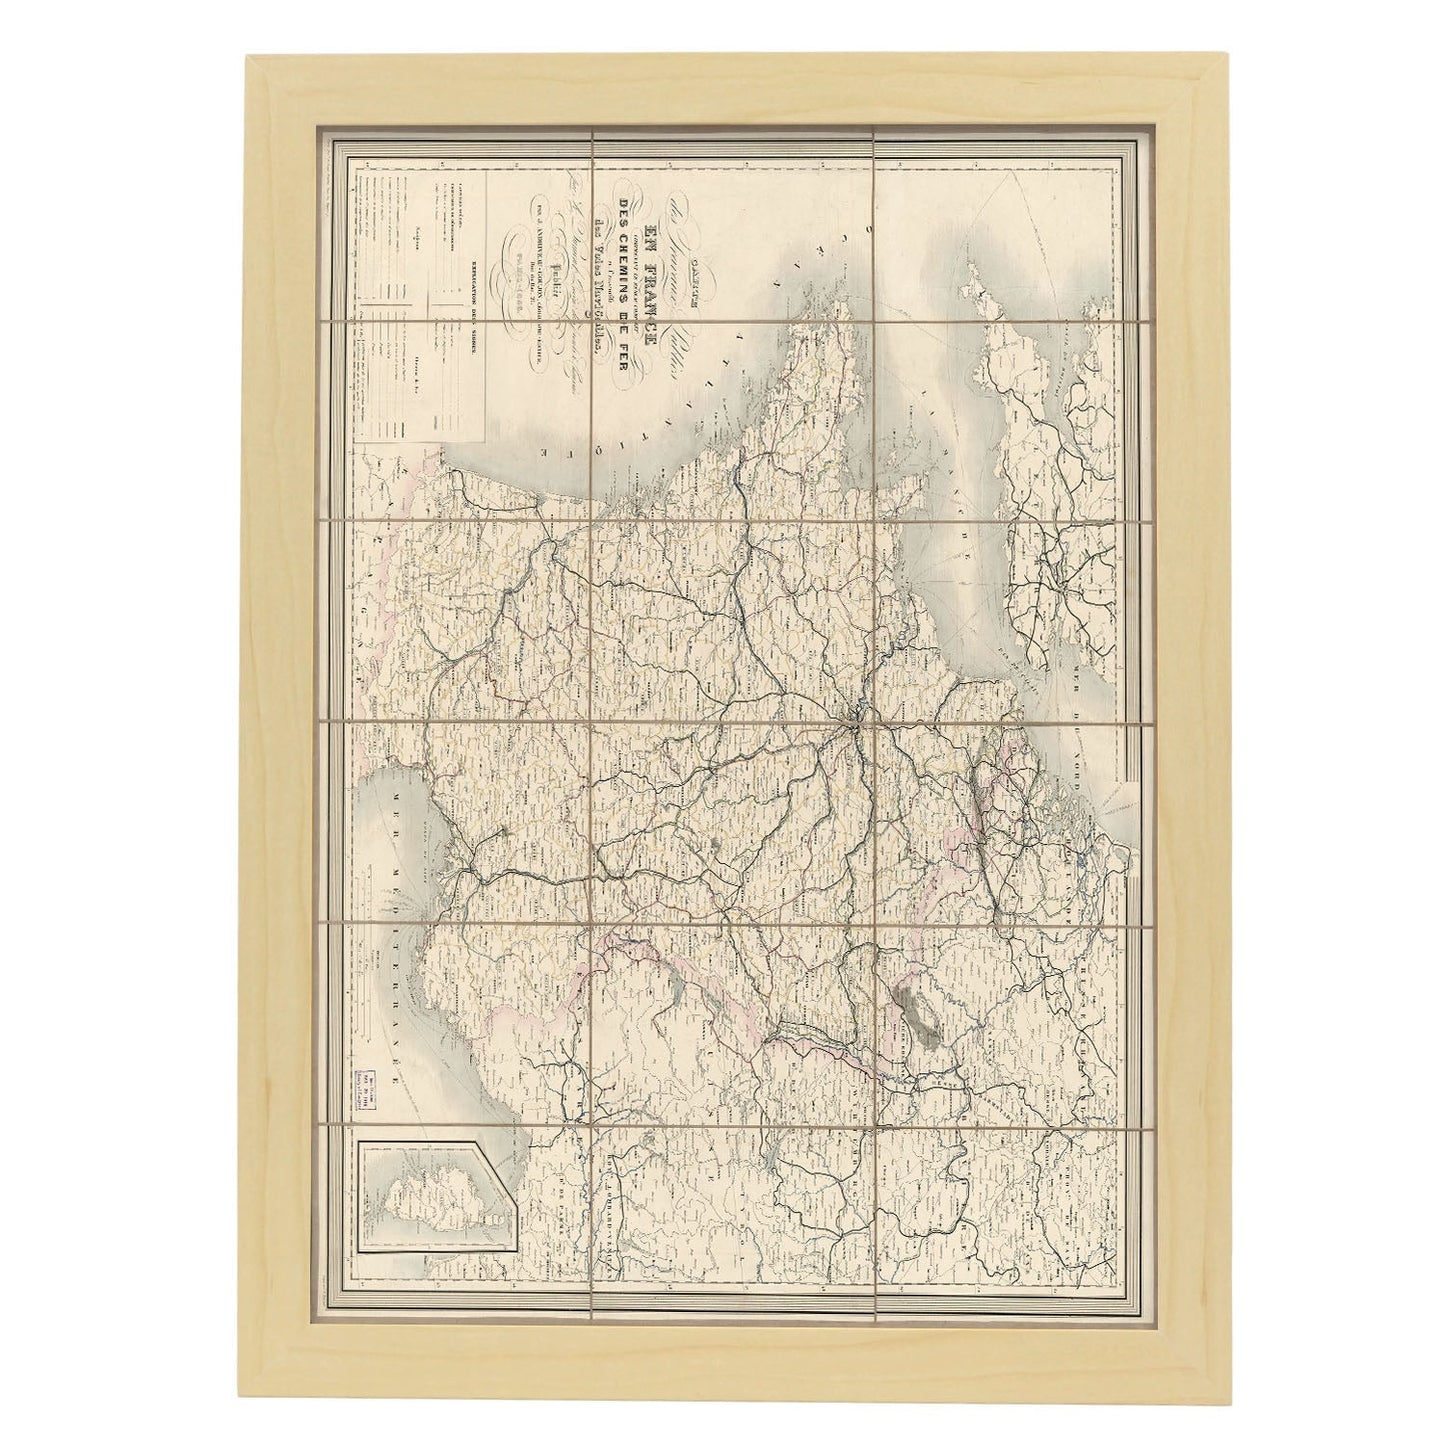 Carte des travaux publics en France 1865-Artwork-Nacnic-A3-Marco Madera clara-Nacnic Estudio SL